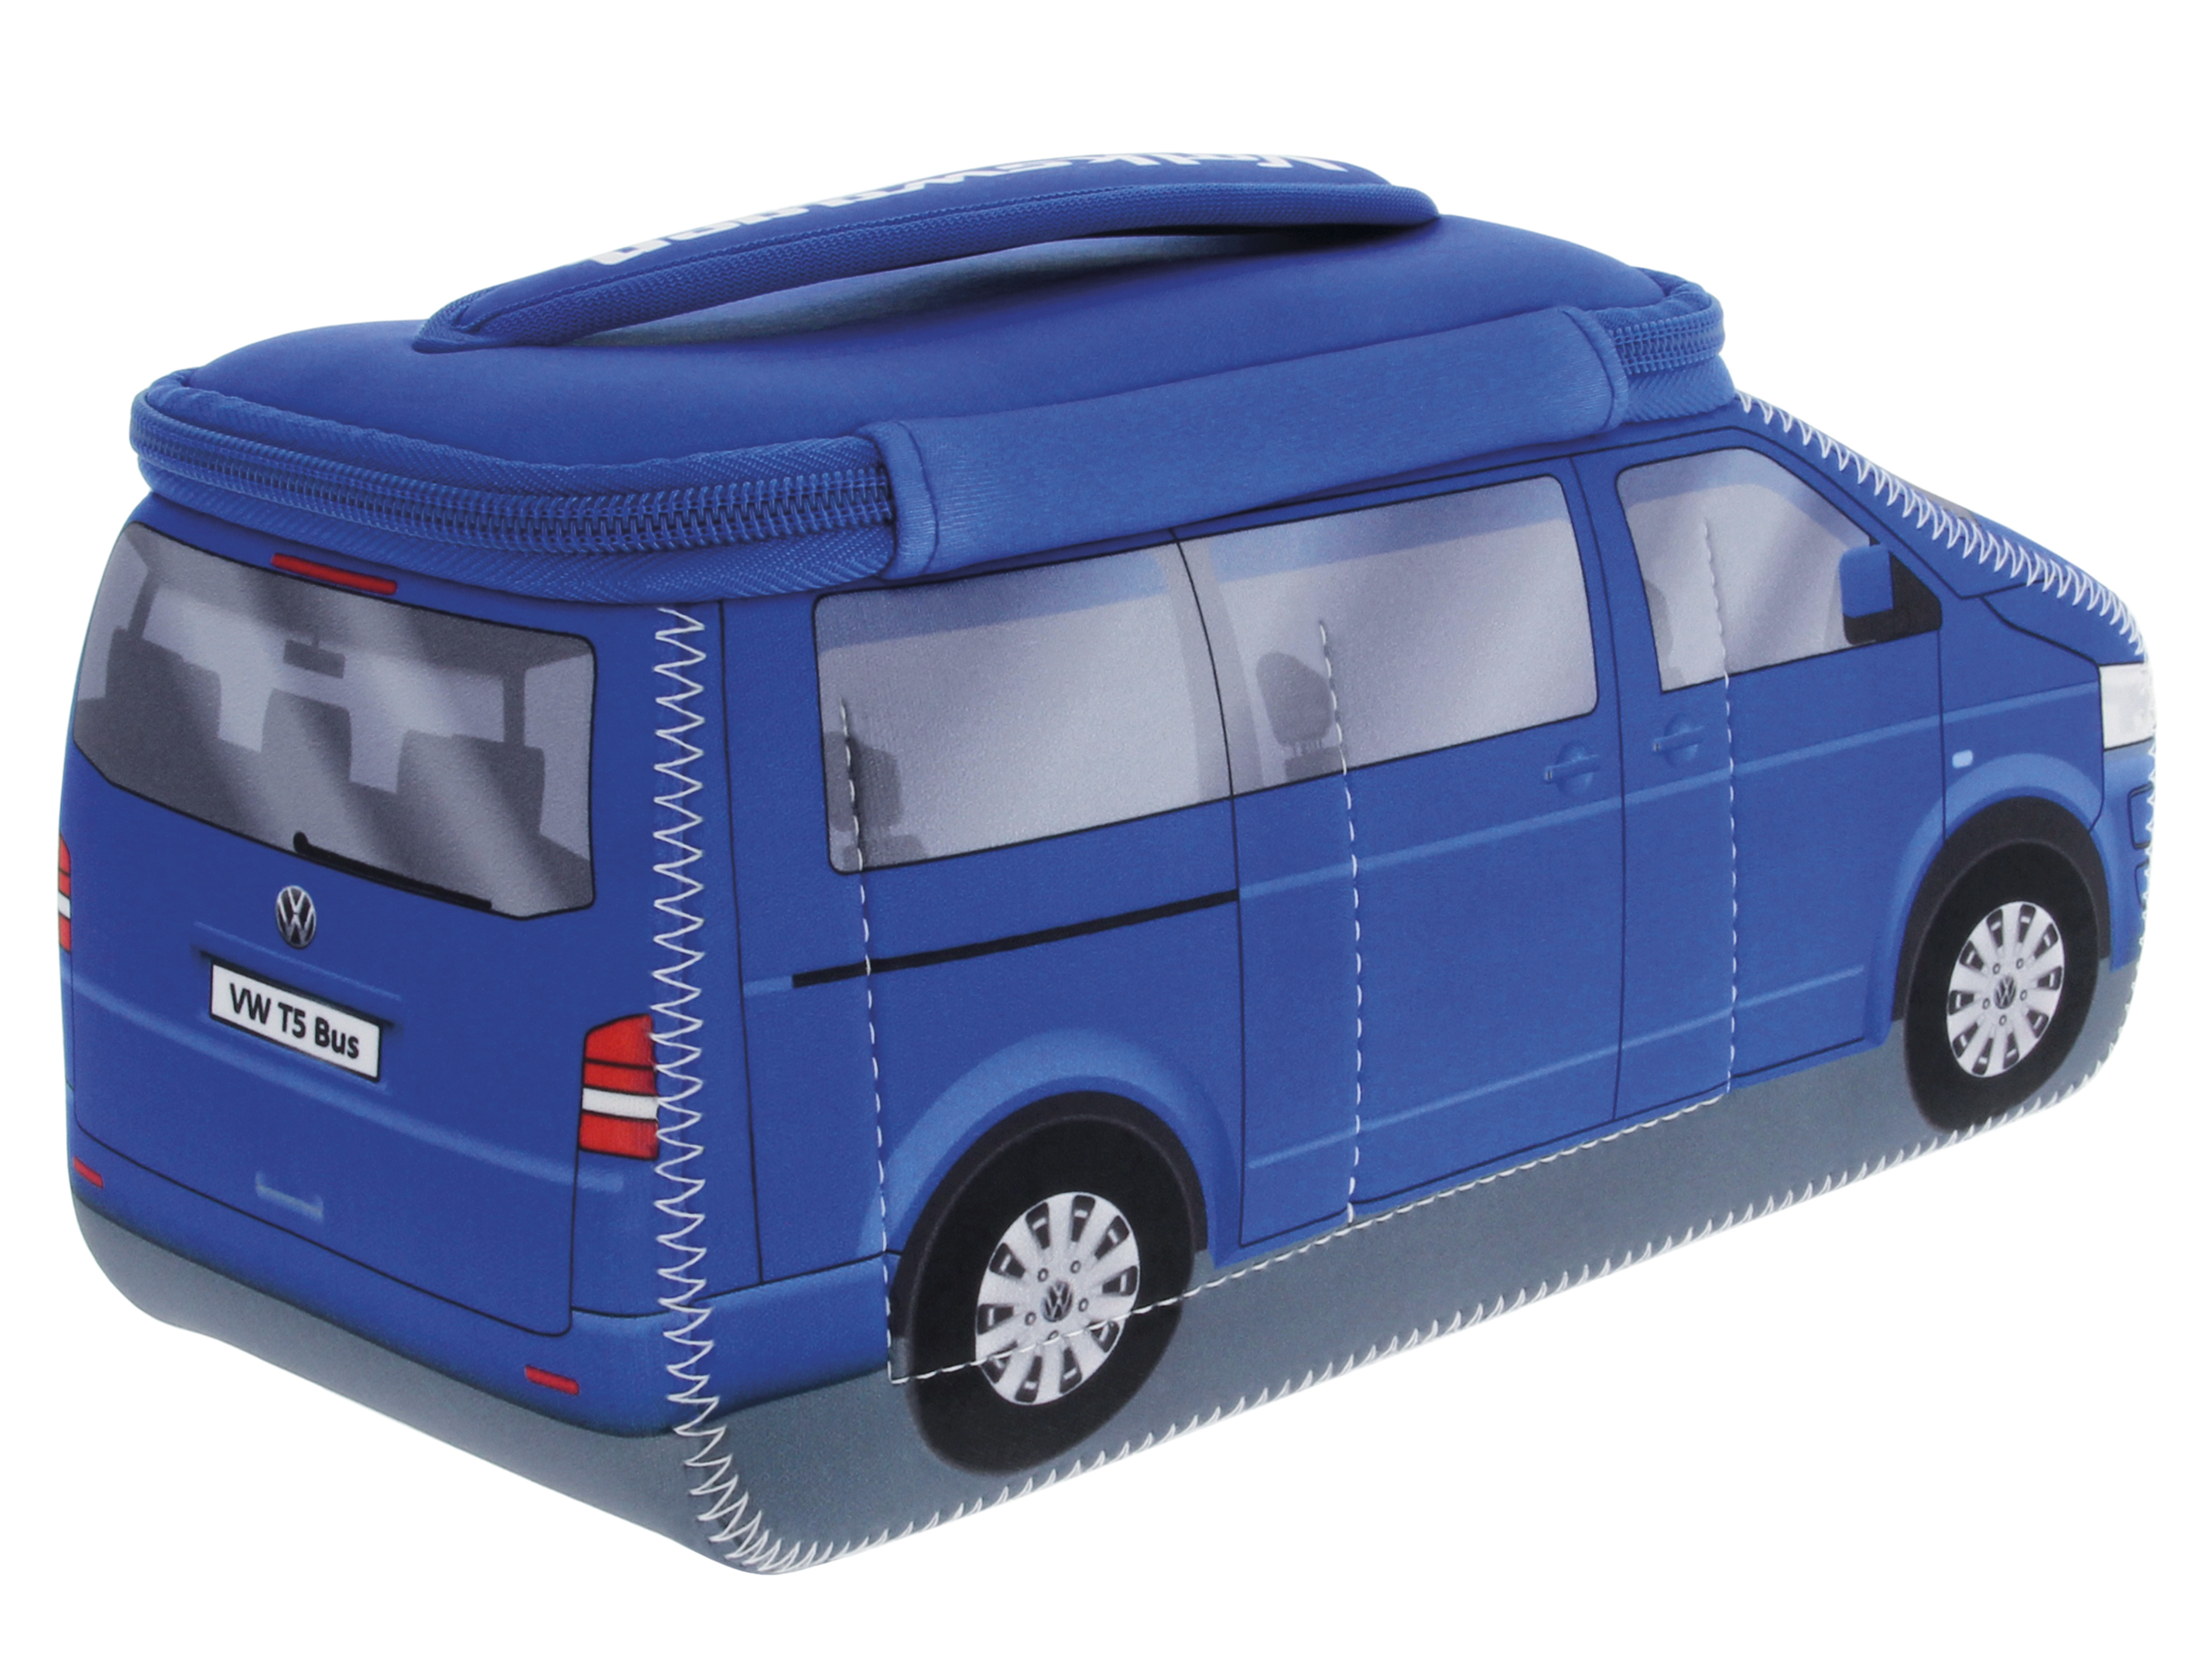 VW T5 Bulli Bus 3D Neoprene Universal Bag - Large